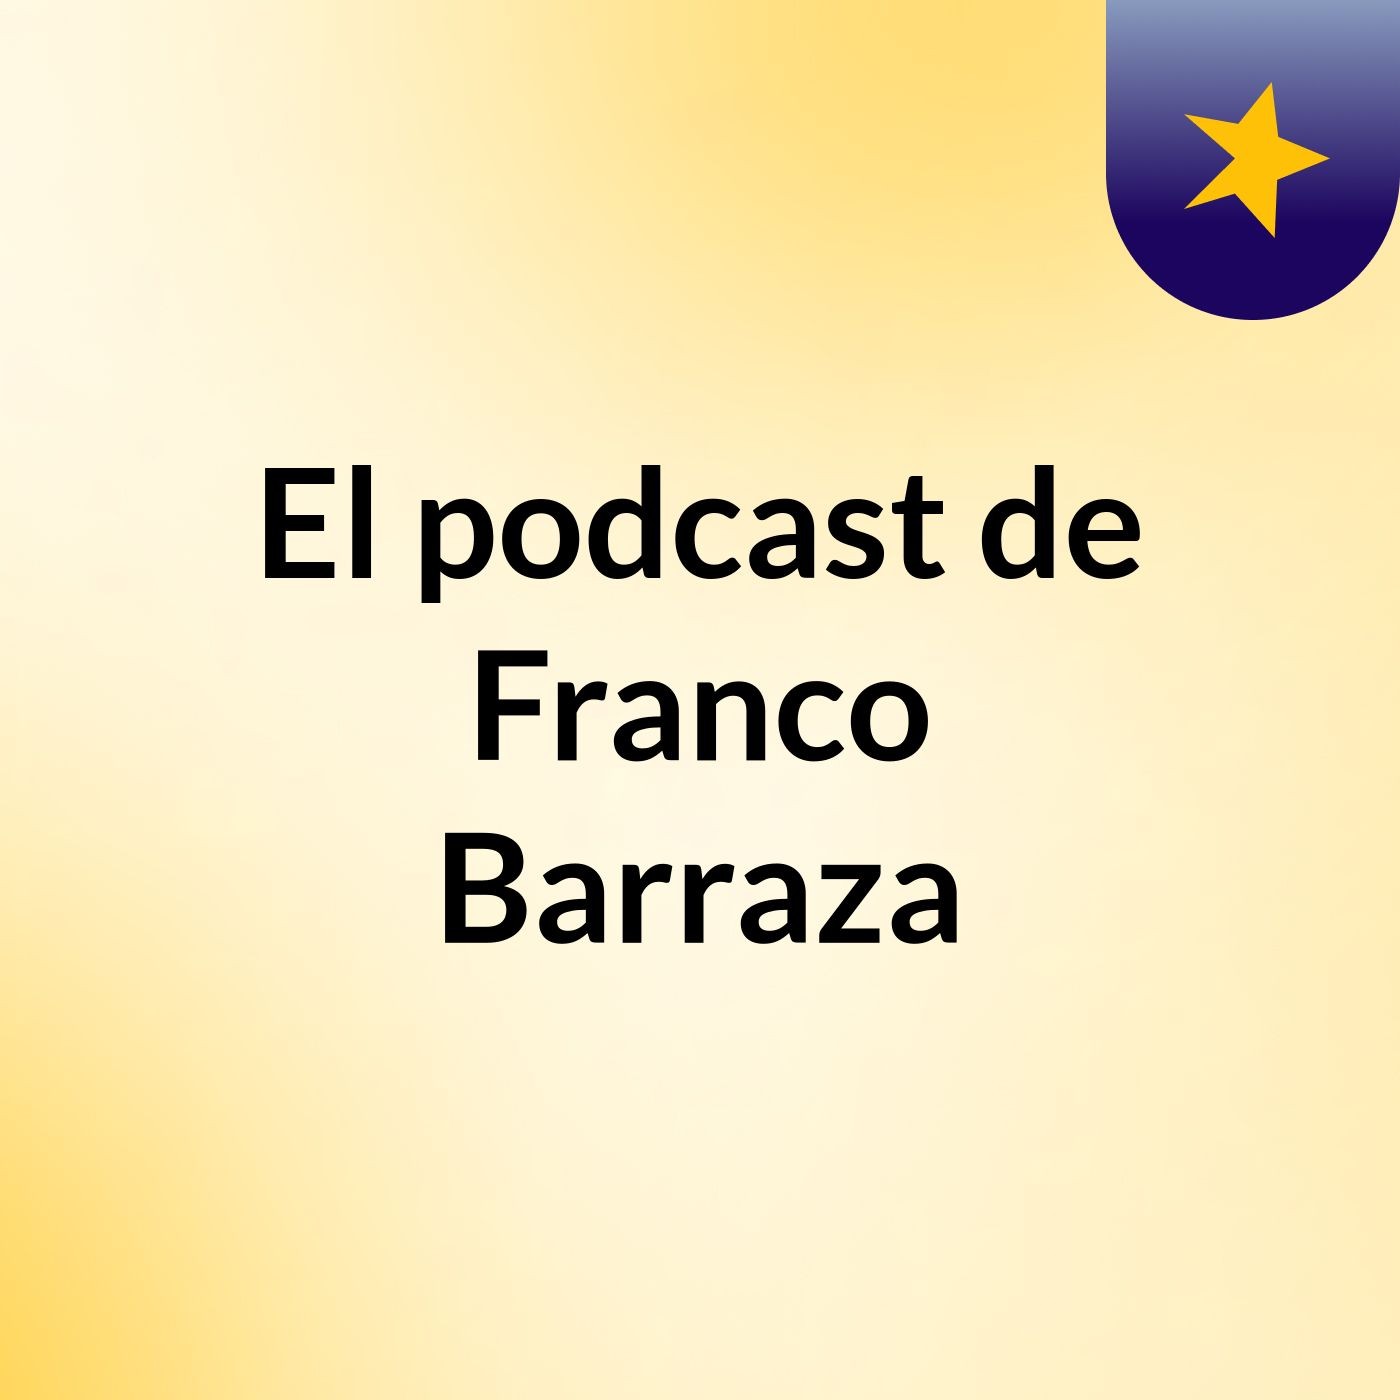 El podcast de Franco Barraza